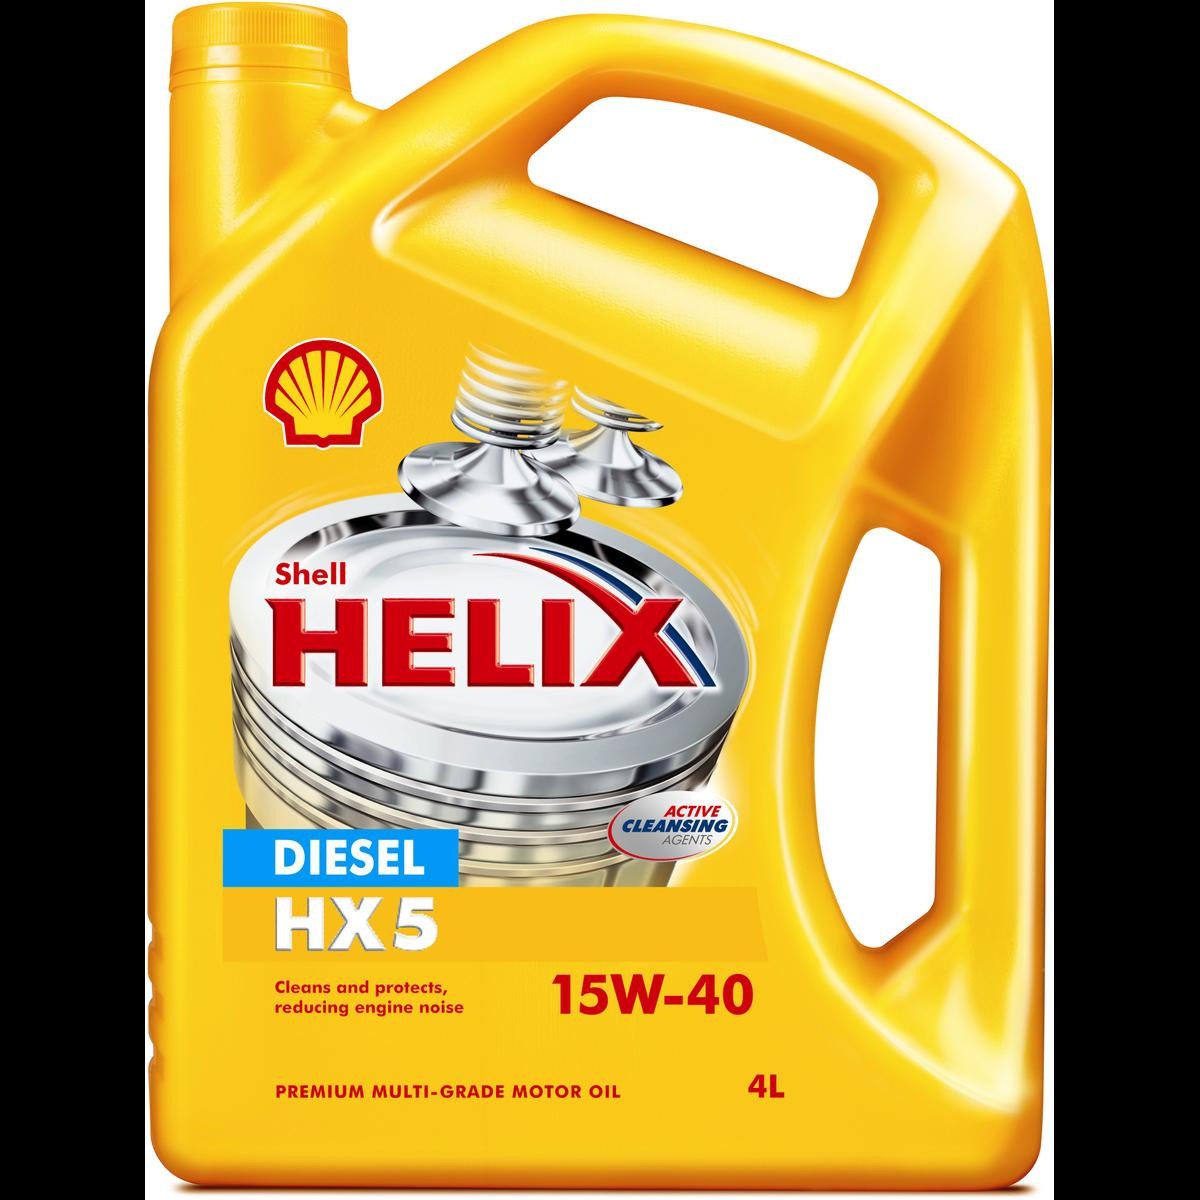 Car oil SHELL 15W-40, 4l longlife 550018039